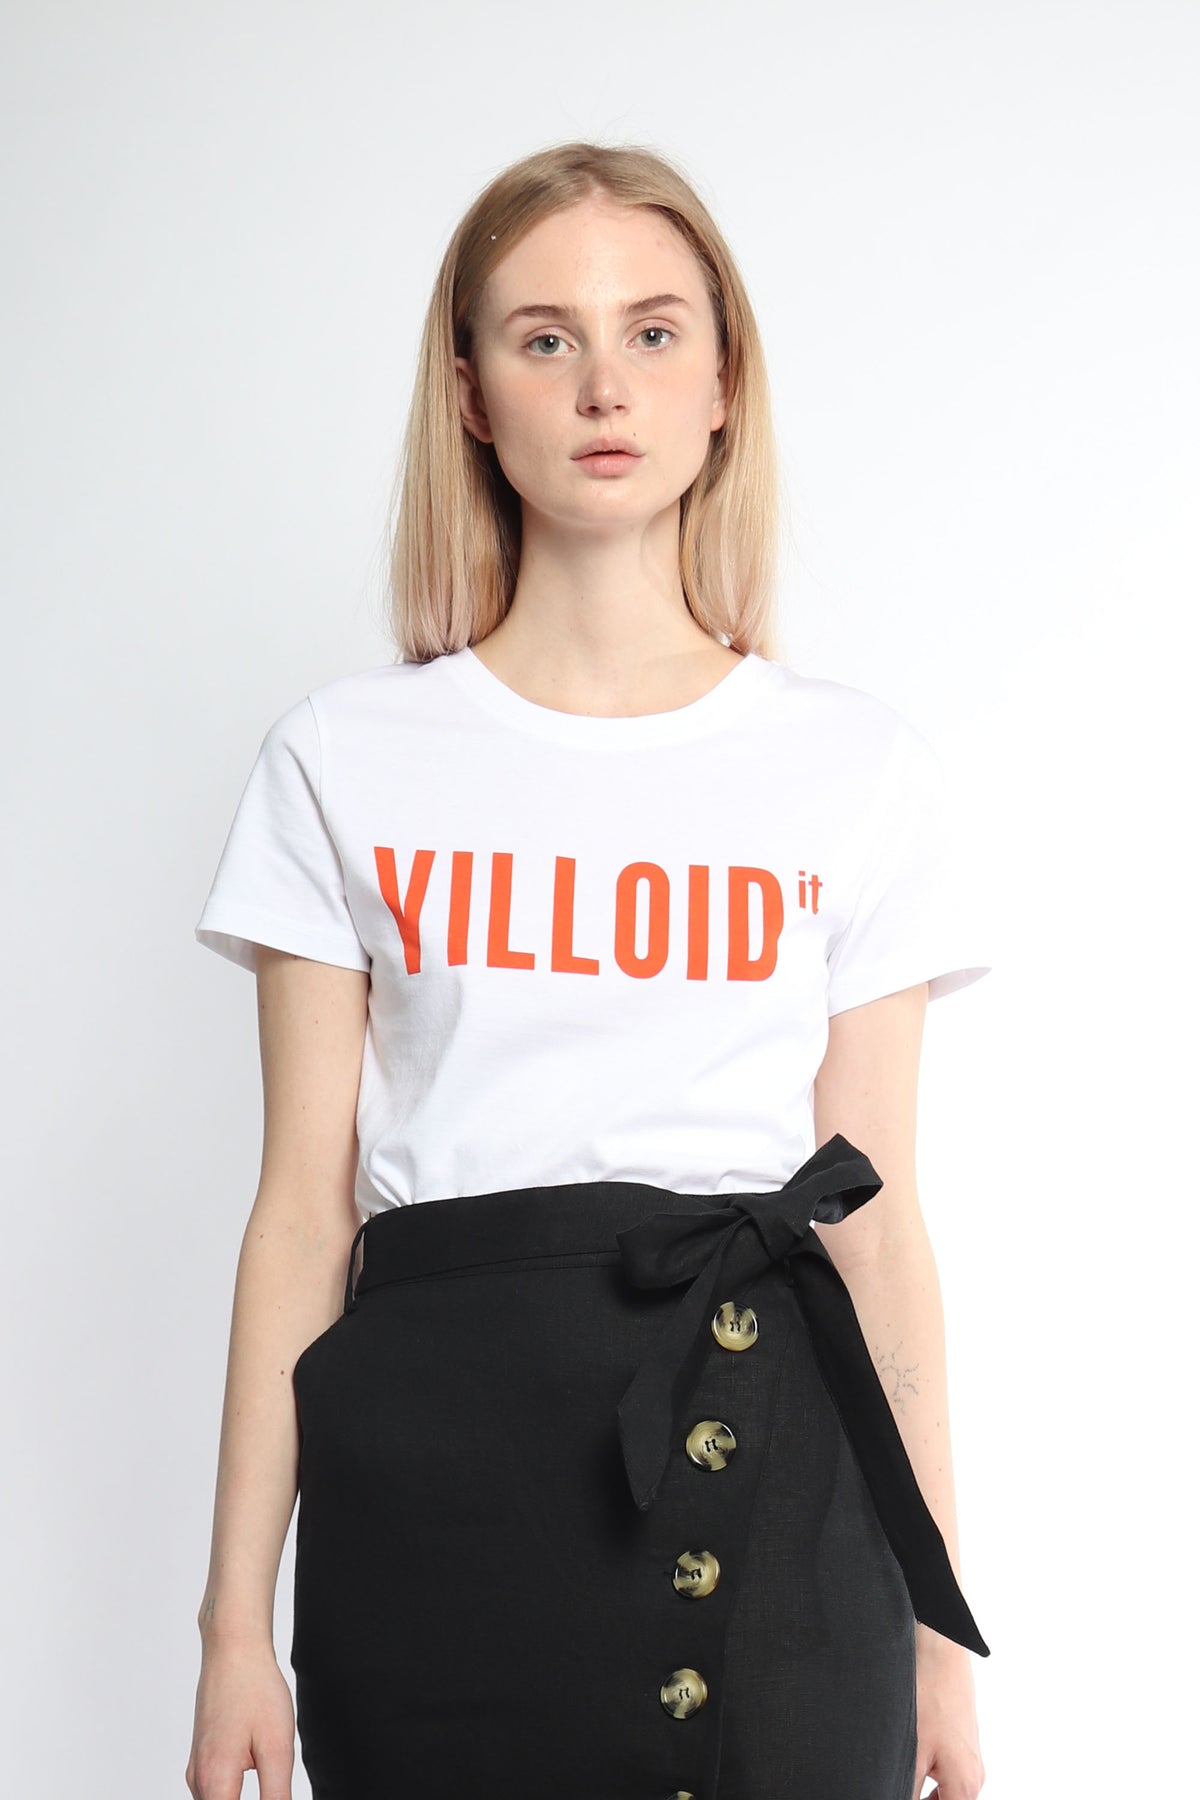 VILLOID VILLOID t-skjorte - White L - 2nd Hand Villoid - 2nd Hand Topper - VILLOID.no